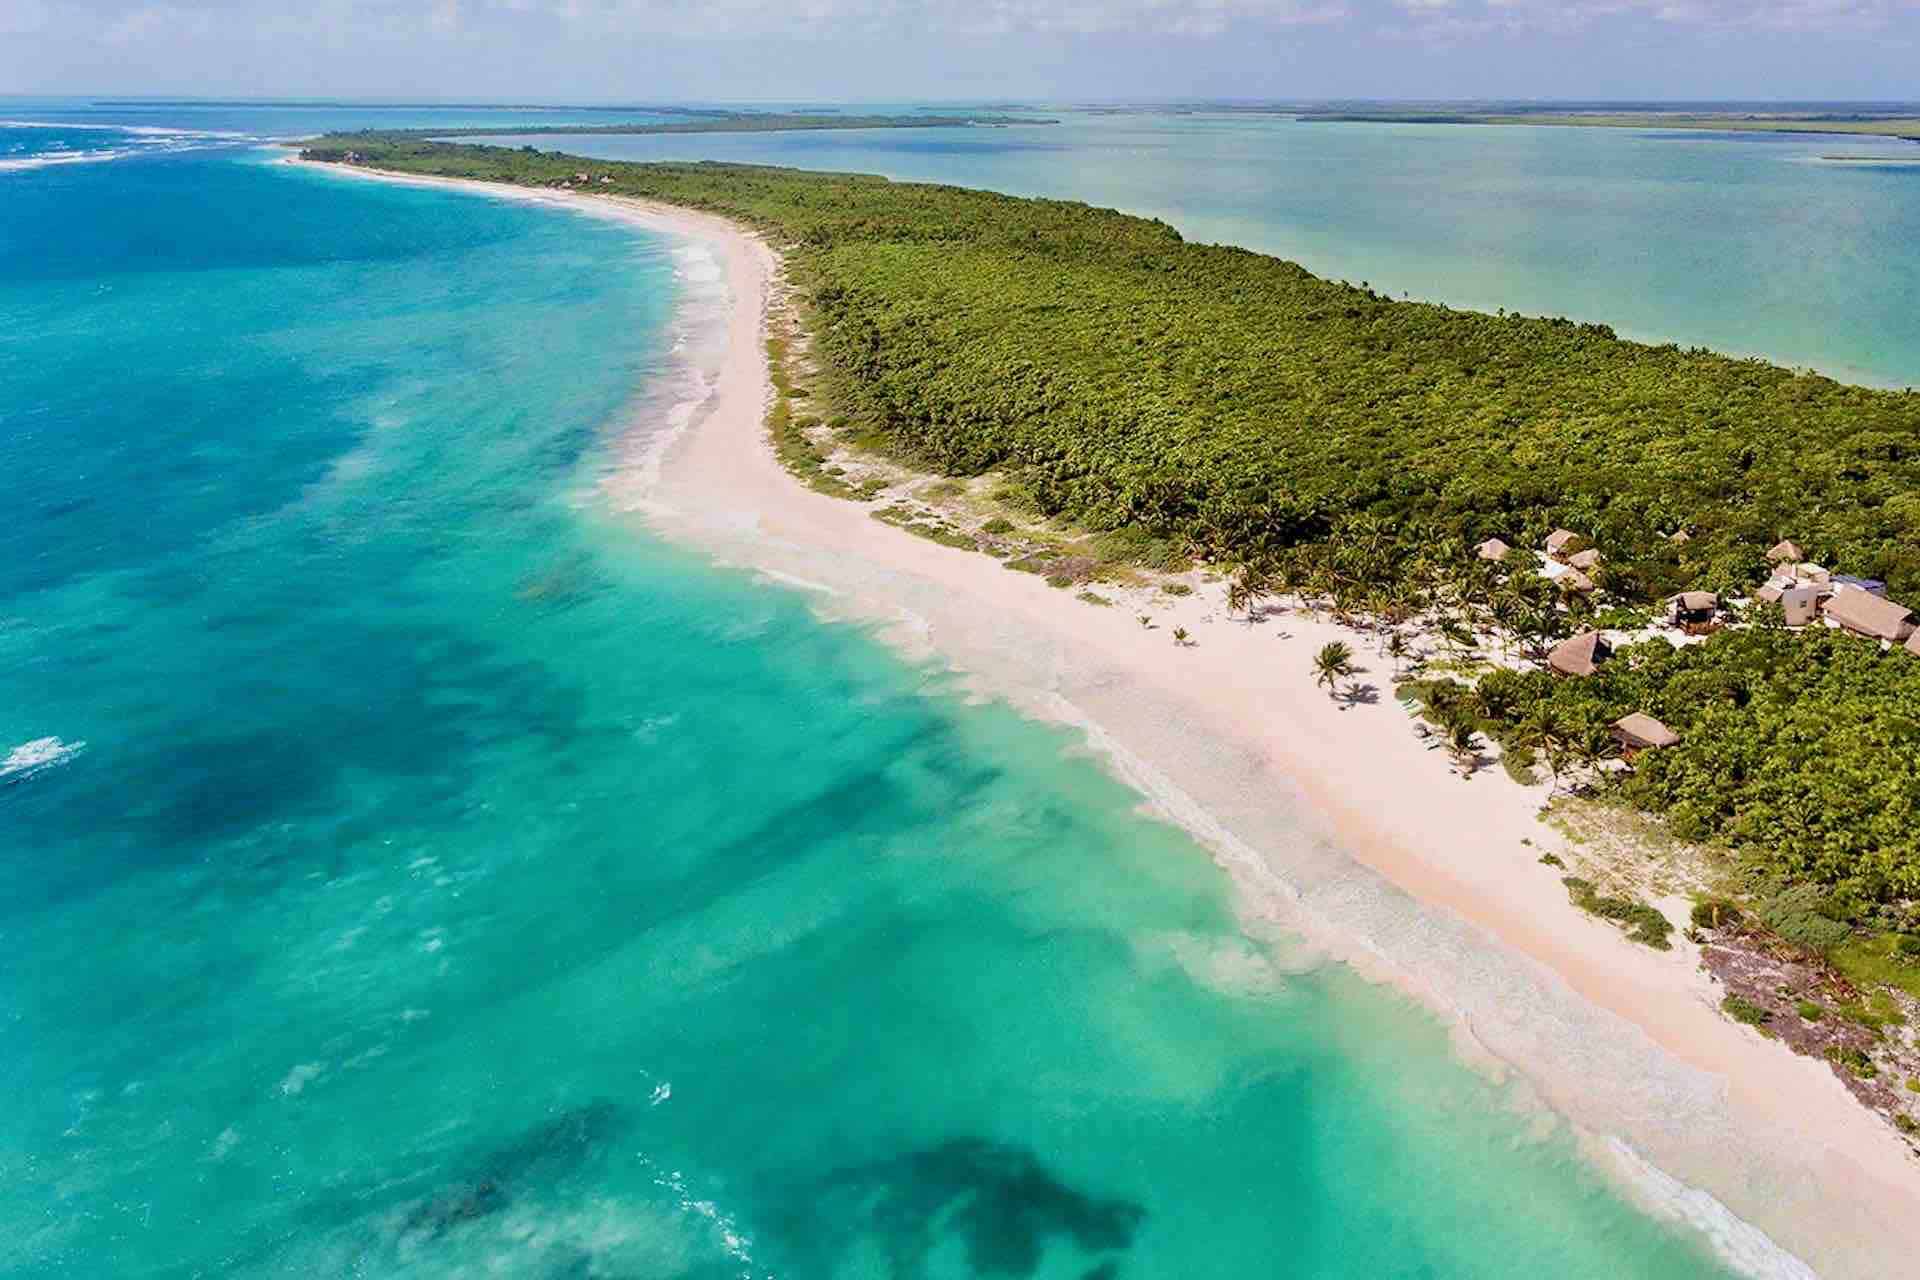 Drone View of Sian Ka'an Mexico beach